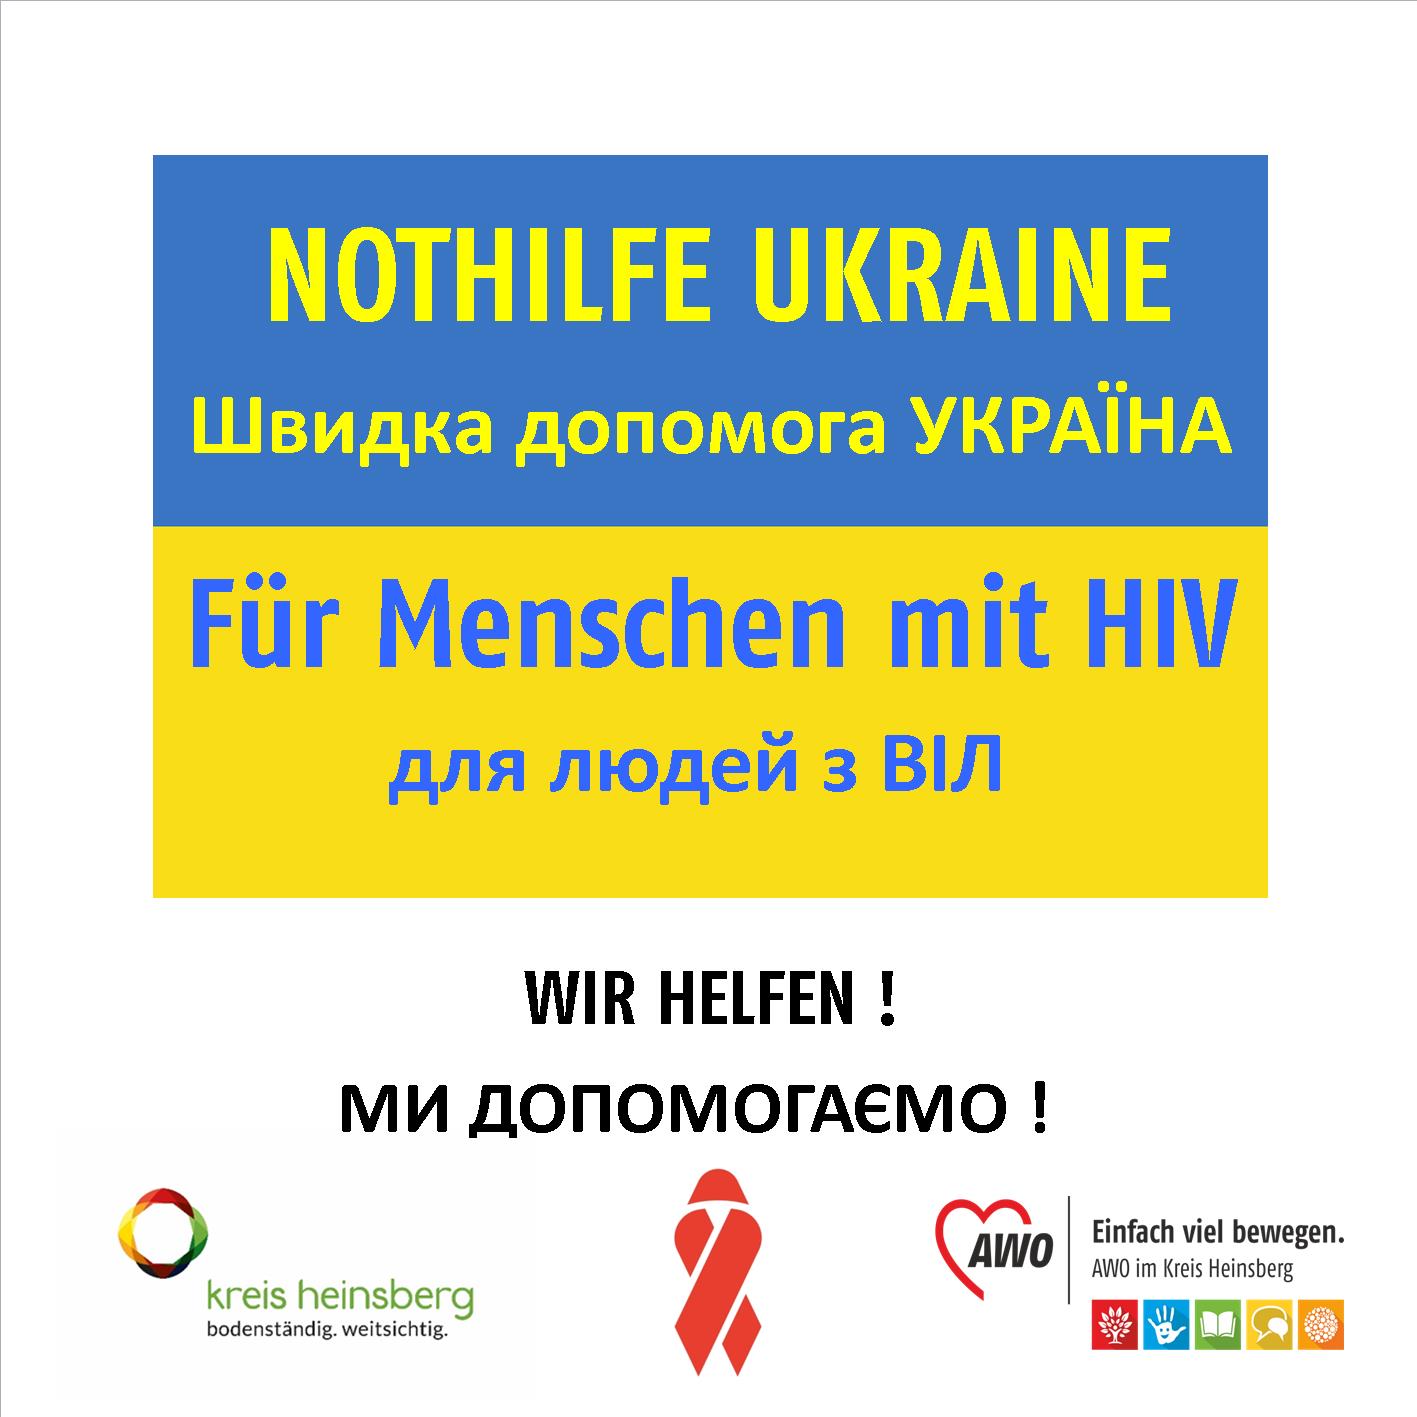 Nothilfe Ukraine-Für Menschen mit HIV / Швидка допомога УКРАЇНА -для людей з ВІЛ 1